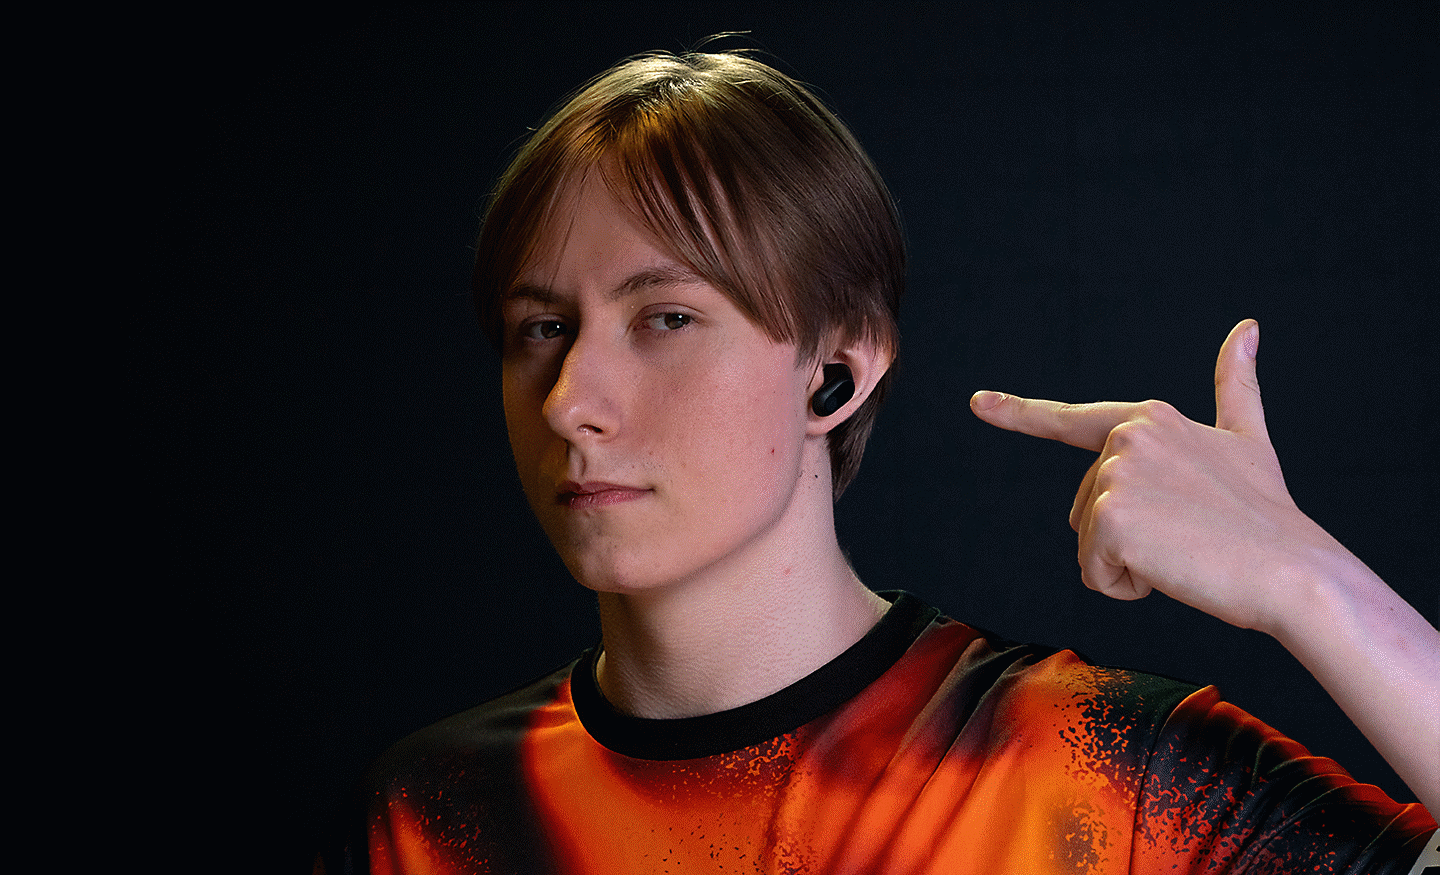 Profilna slika igrača Chronicle na kojoj nosi par crnih slušalica INZONE Buds i pokazuje na njih levom rukom